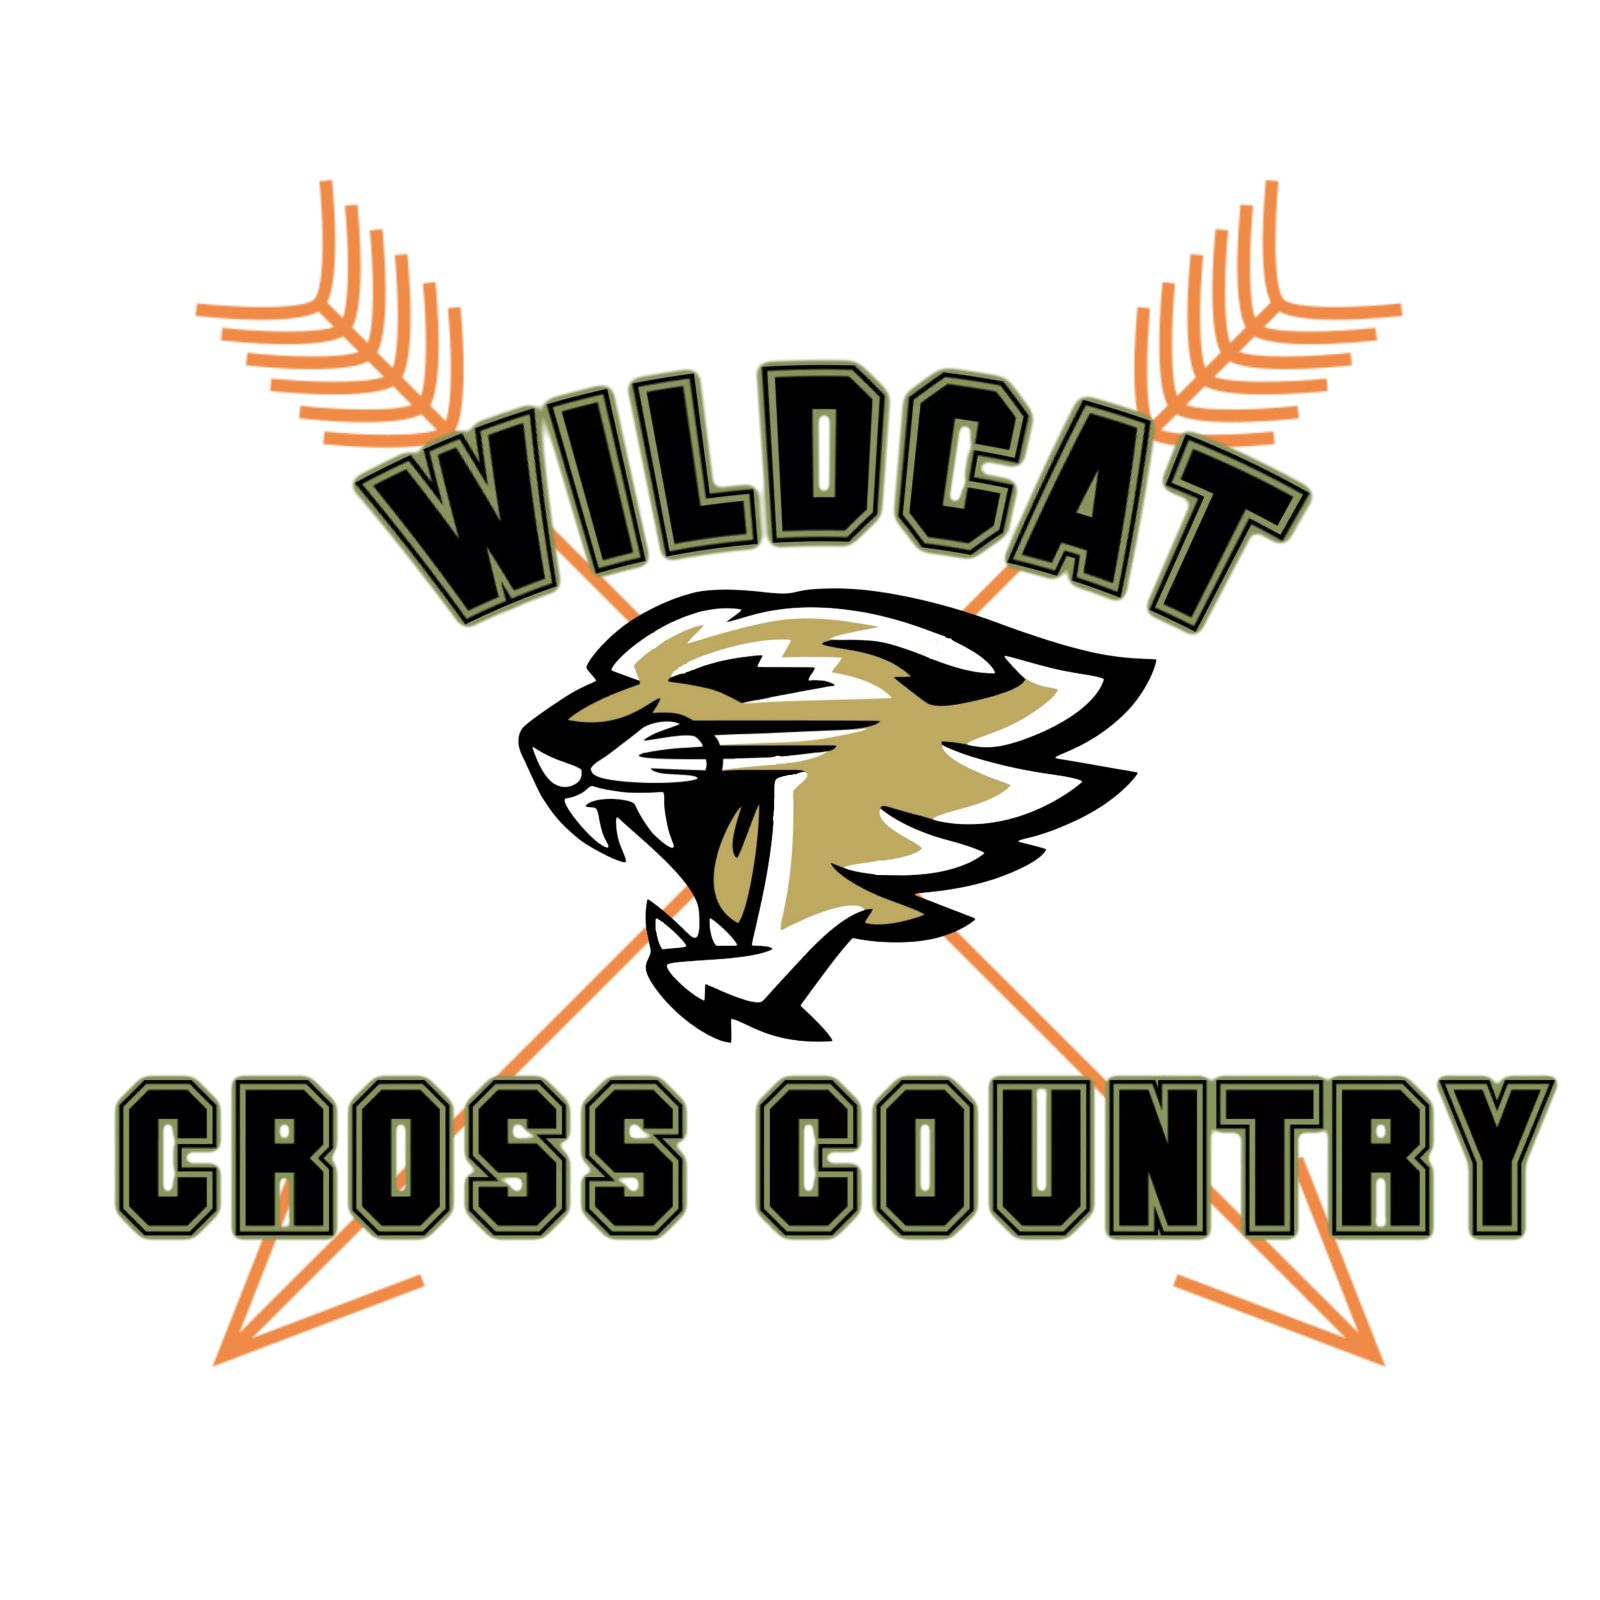 Wildcat Cross Country Logo